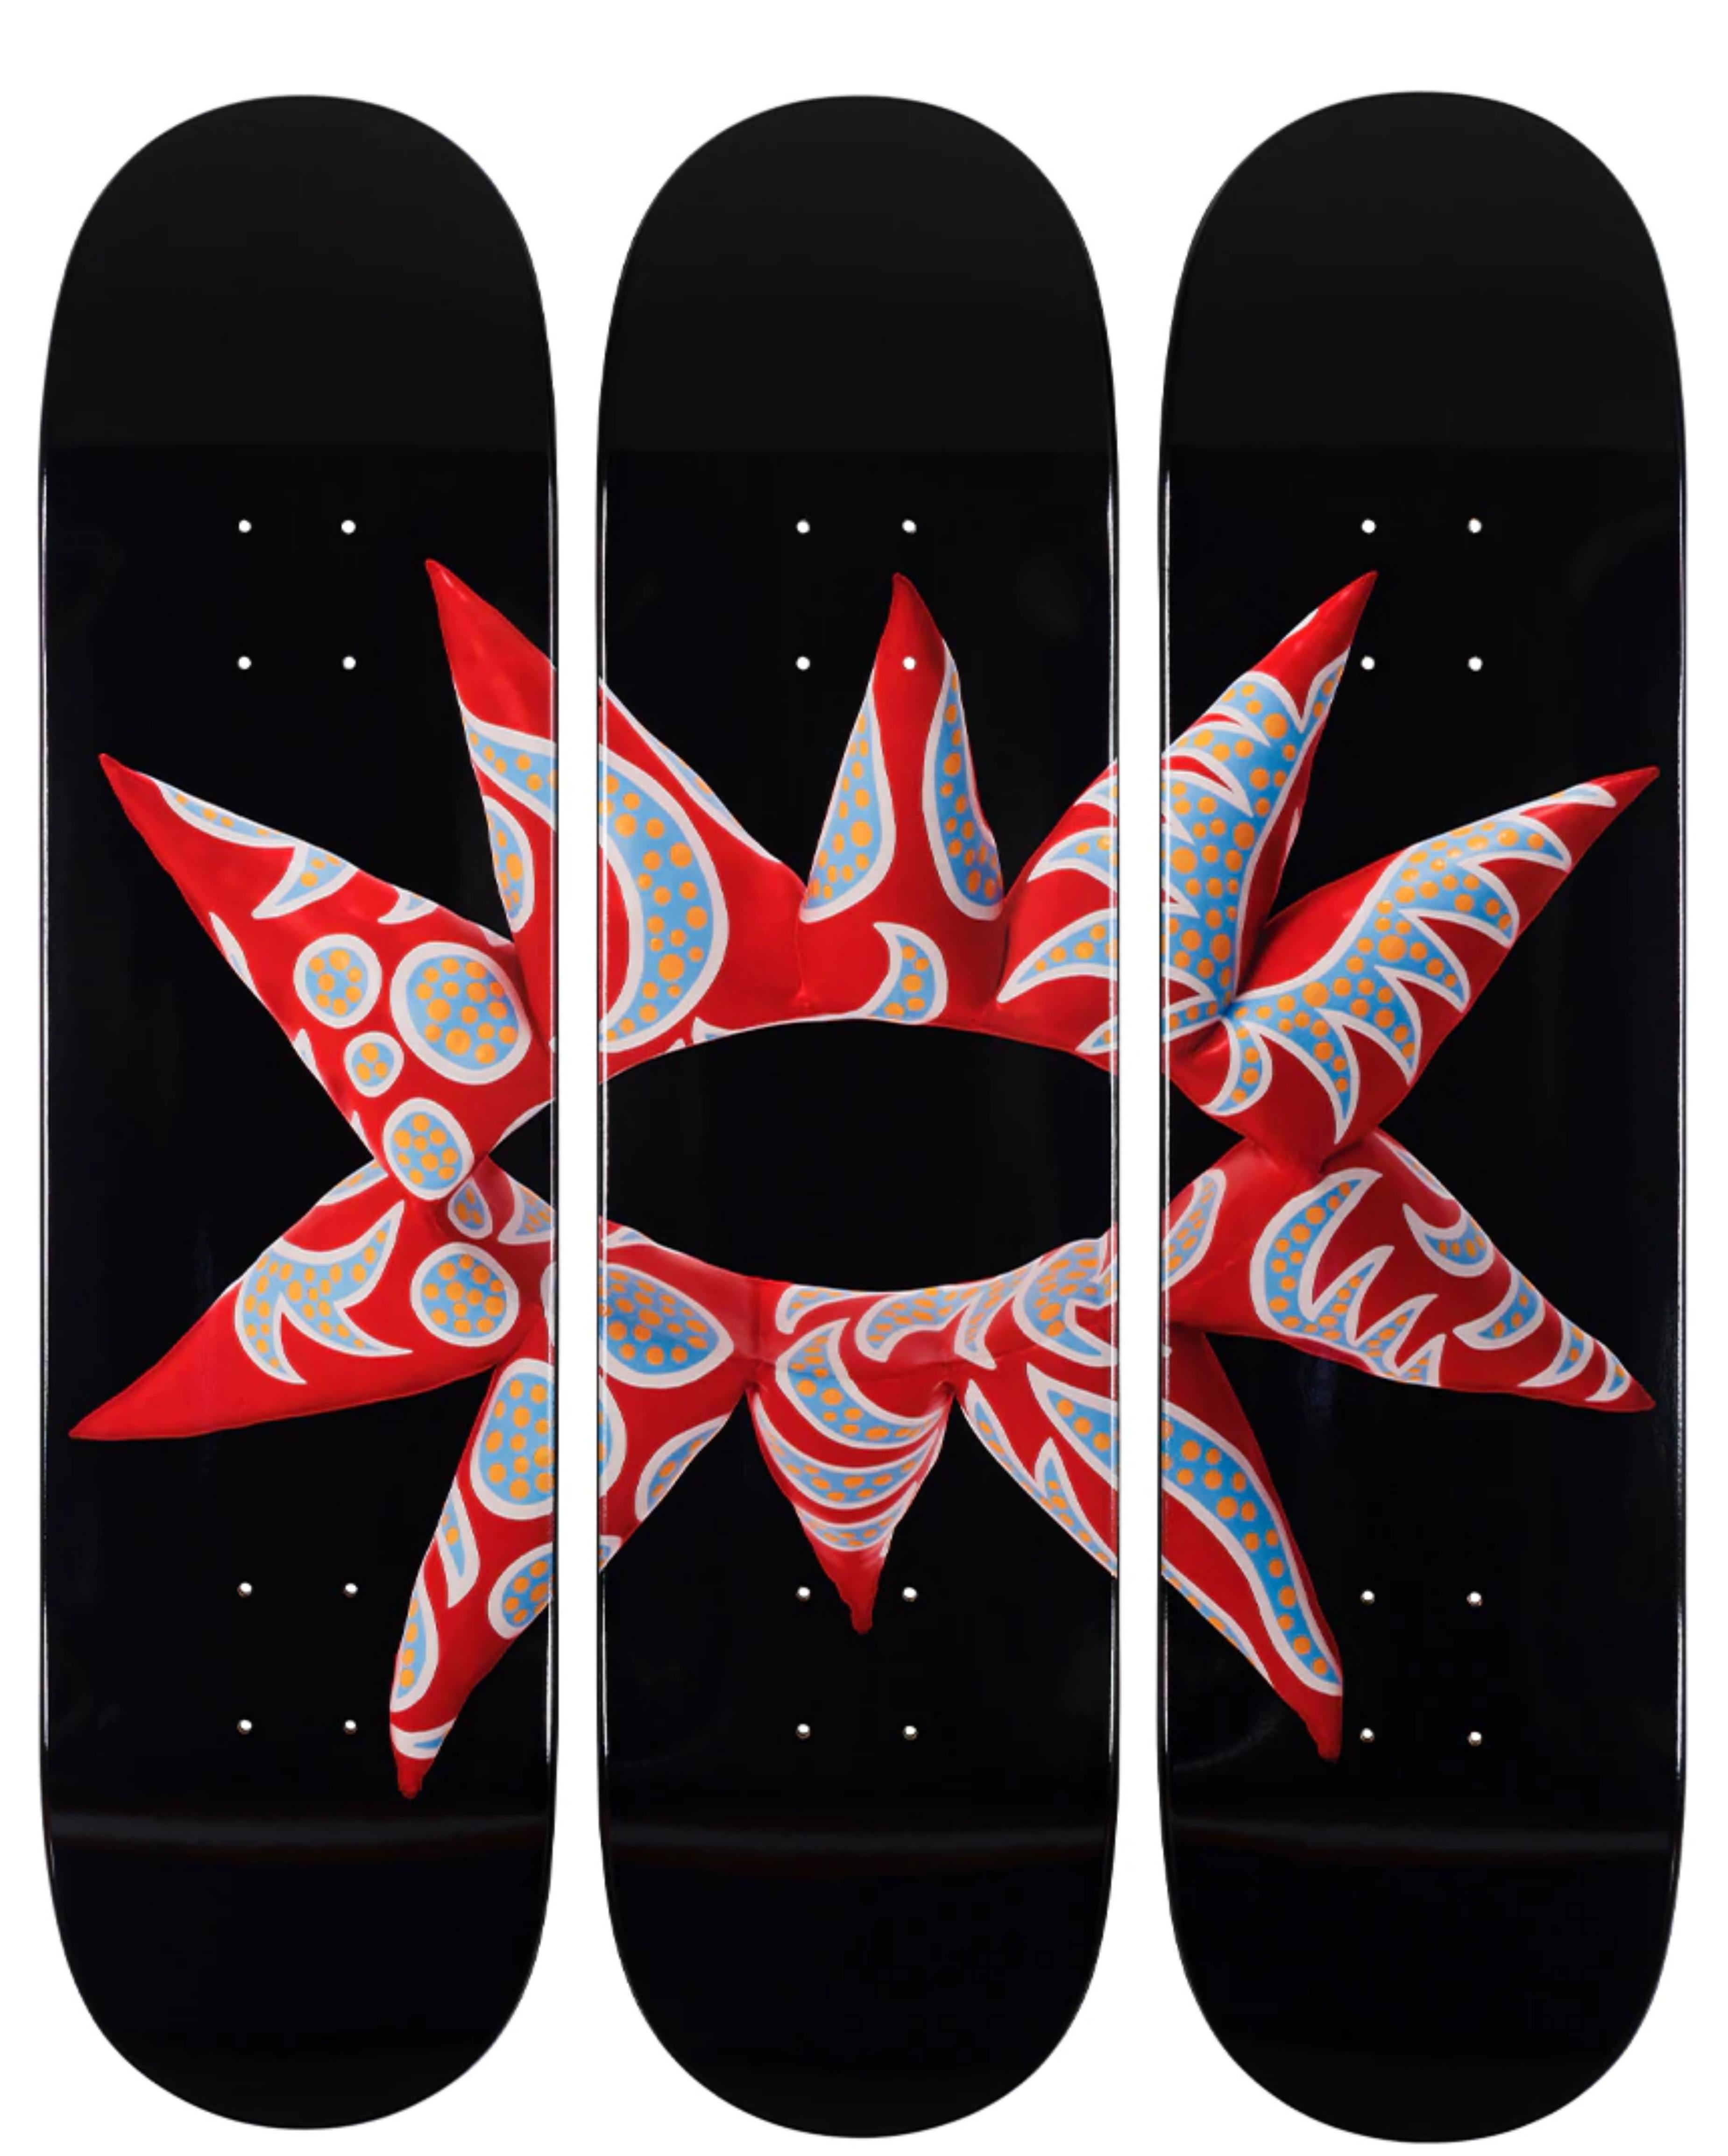 Mit all My Flowering Heart Skateboard Triptychon, 3 limitierte Auflage von Skateboard-Decken  – Print von Yayoi Kusama